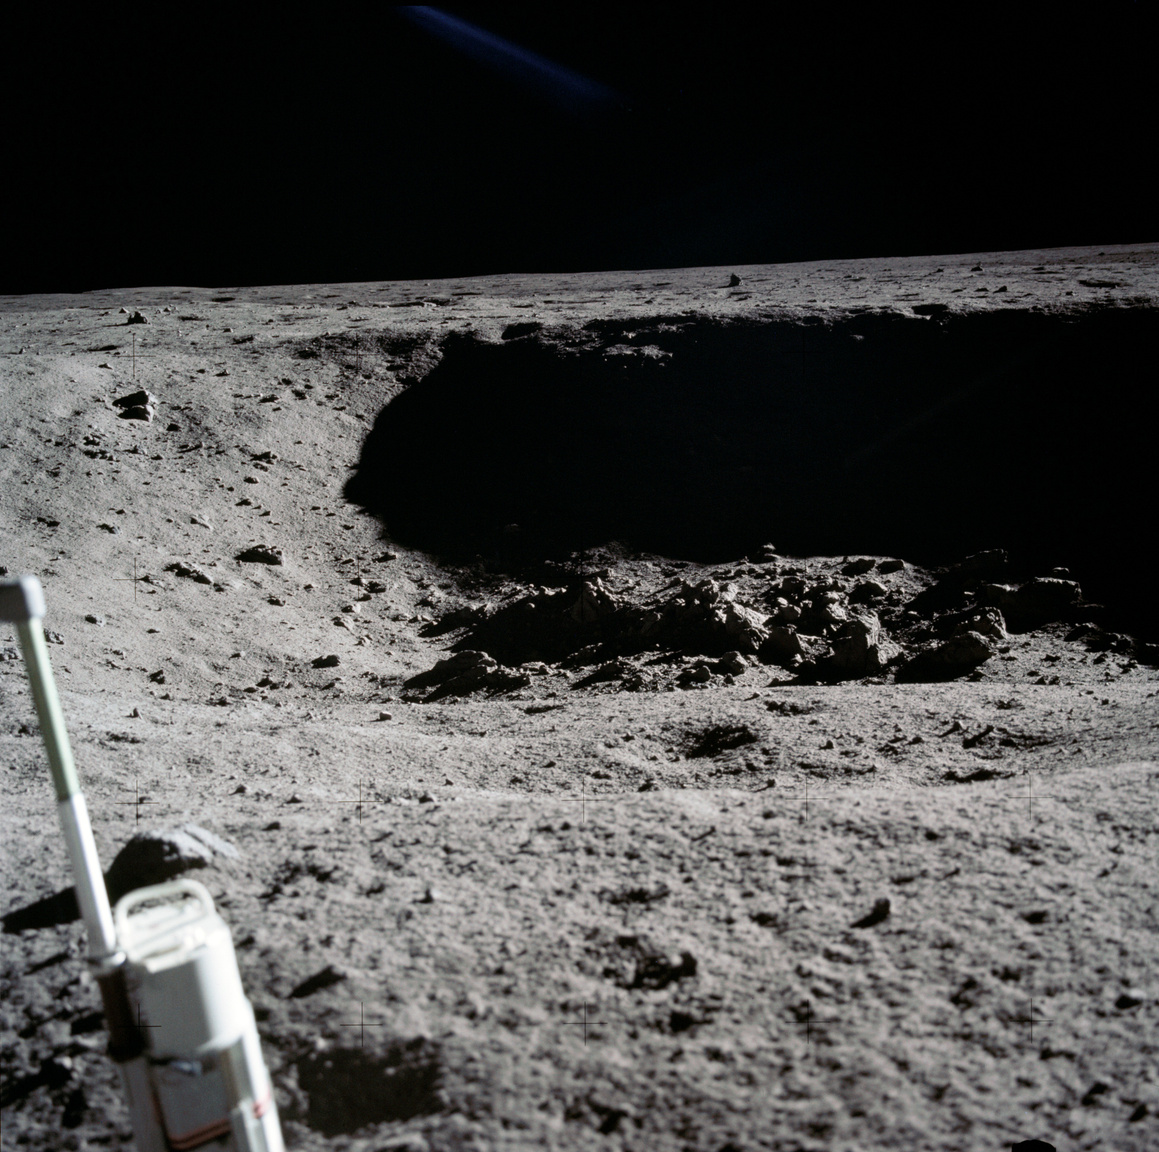 Egy biztos, és ez Hansen életrajzi könyvéből valamint a NASA mindent percről percre rögzítő jegyzőkönyveiből is kiderül: Armstrong valóban tett egy előre nem tervezett, magányos sétát egy kis, kb 30 méter átmérőjű kráterhez (Little West Crater), ahol pár percet töltött egyedül. Az űrhajós készített pár fotót a holdkomptól hatvan méterre lévő mélyedésről – ez itt az egyik képkocka.